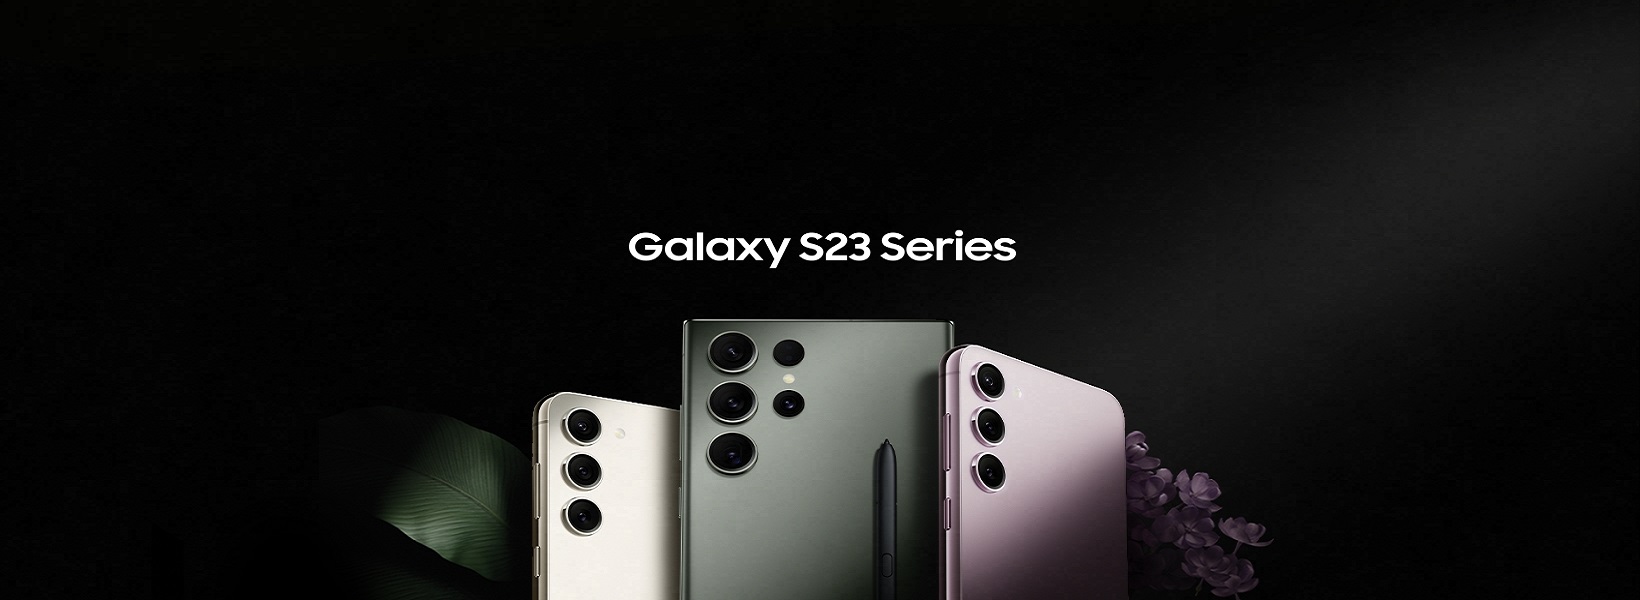 Samsung Galaxy S Series-S20 Ultra|S20+|S20 Pre Booking|S10 Lite|S10|S10+|S10e